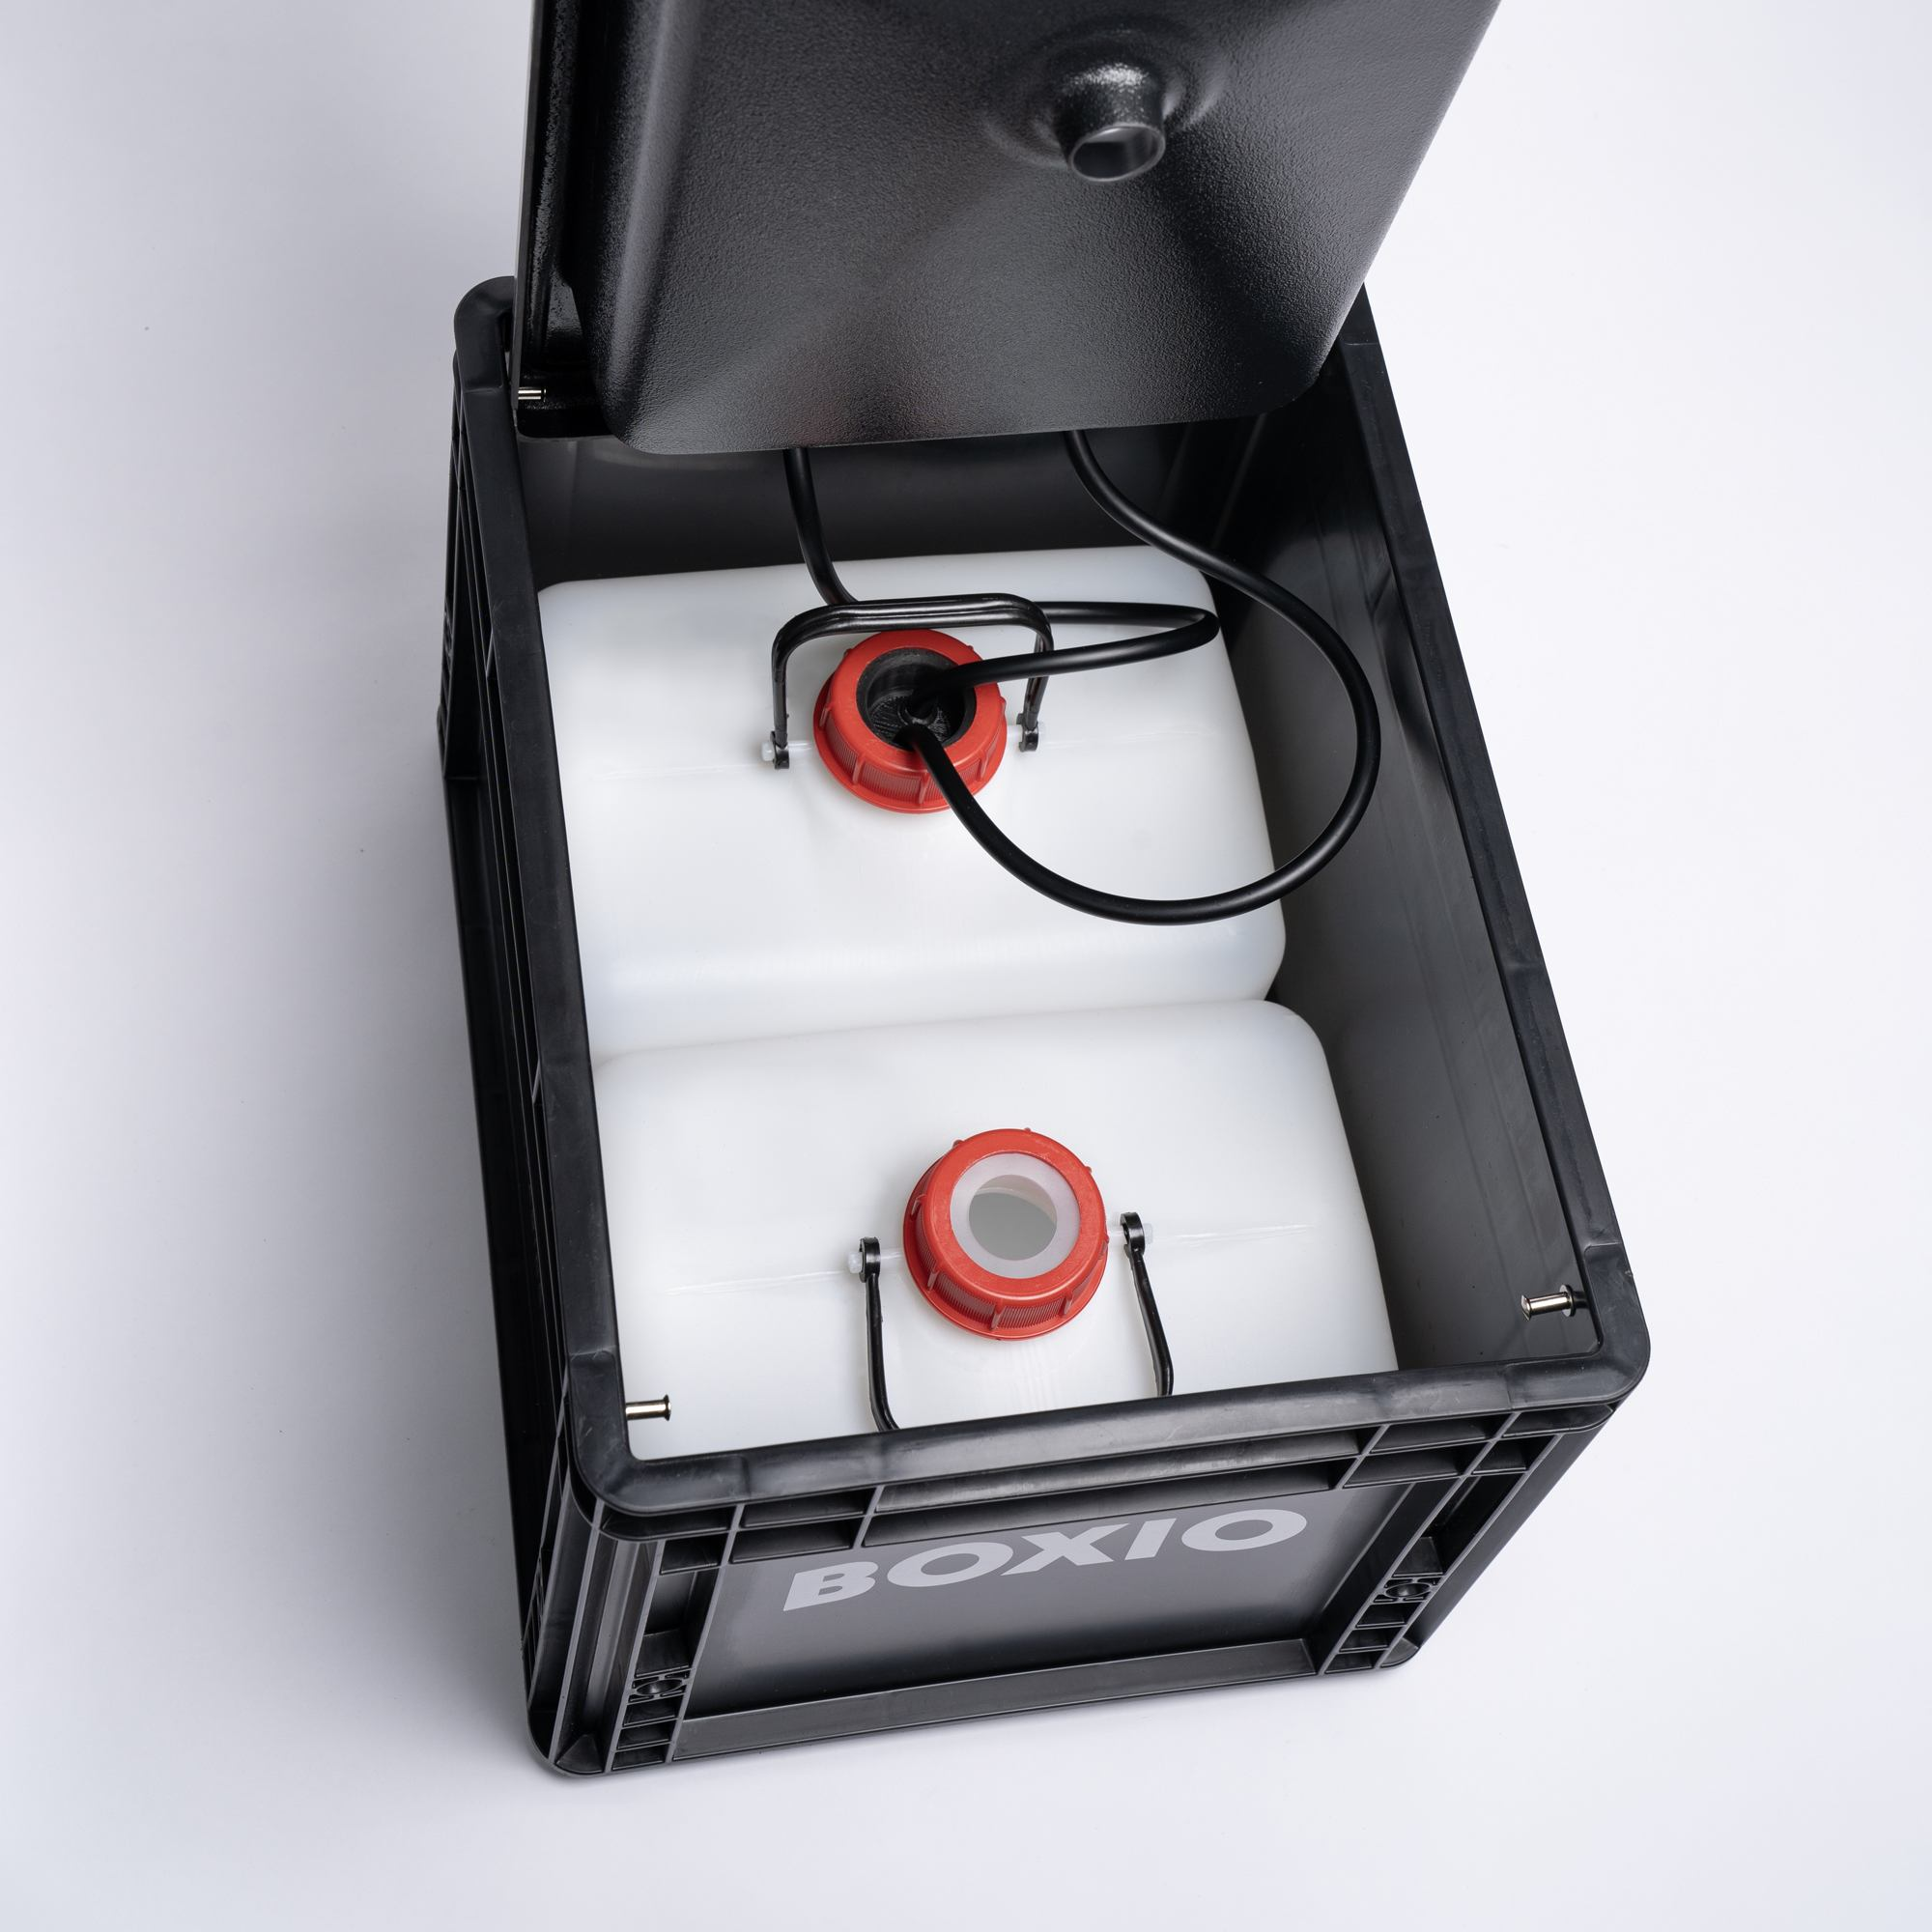 BOXIO-Wash Innenansicht mit Wasserkanister und Abwasserbehälter sowie Schlauchsystem